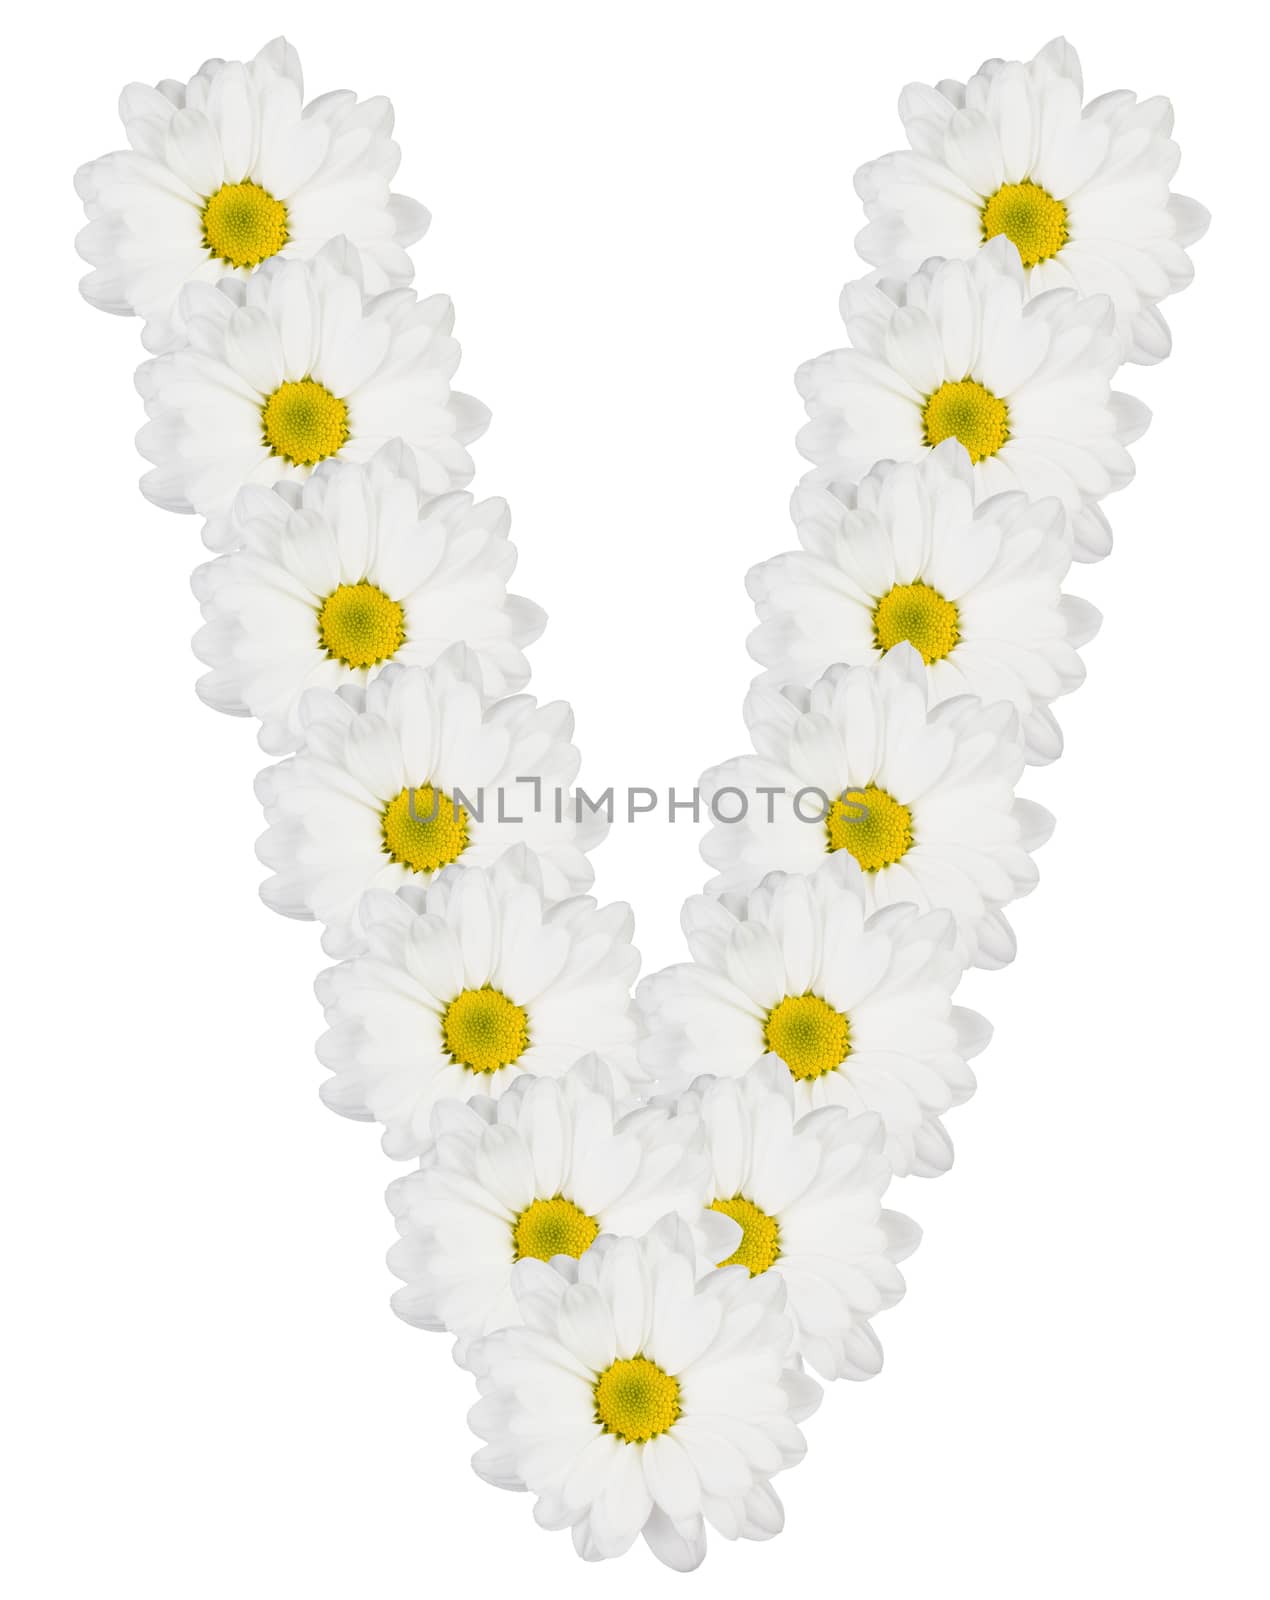 Letter V made from white flowers